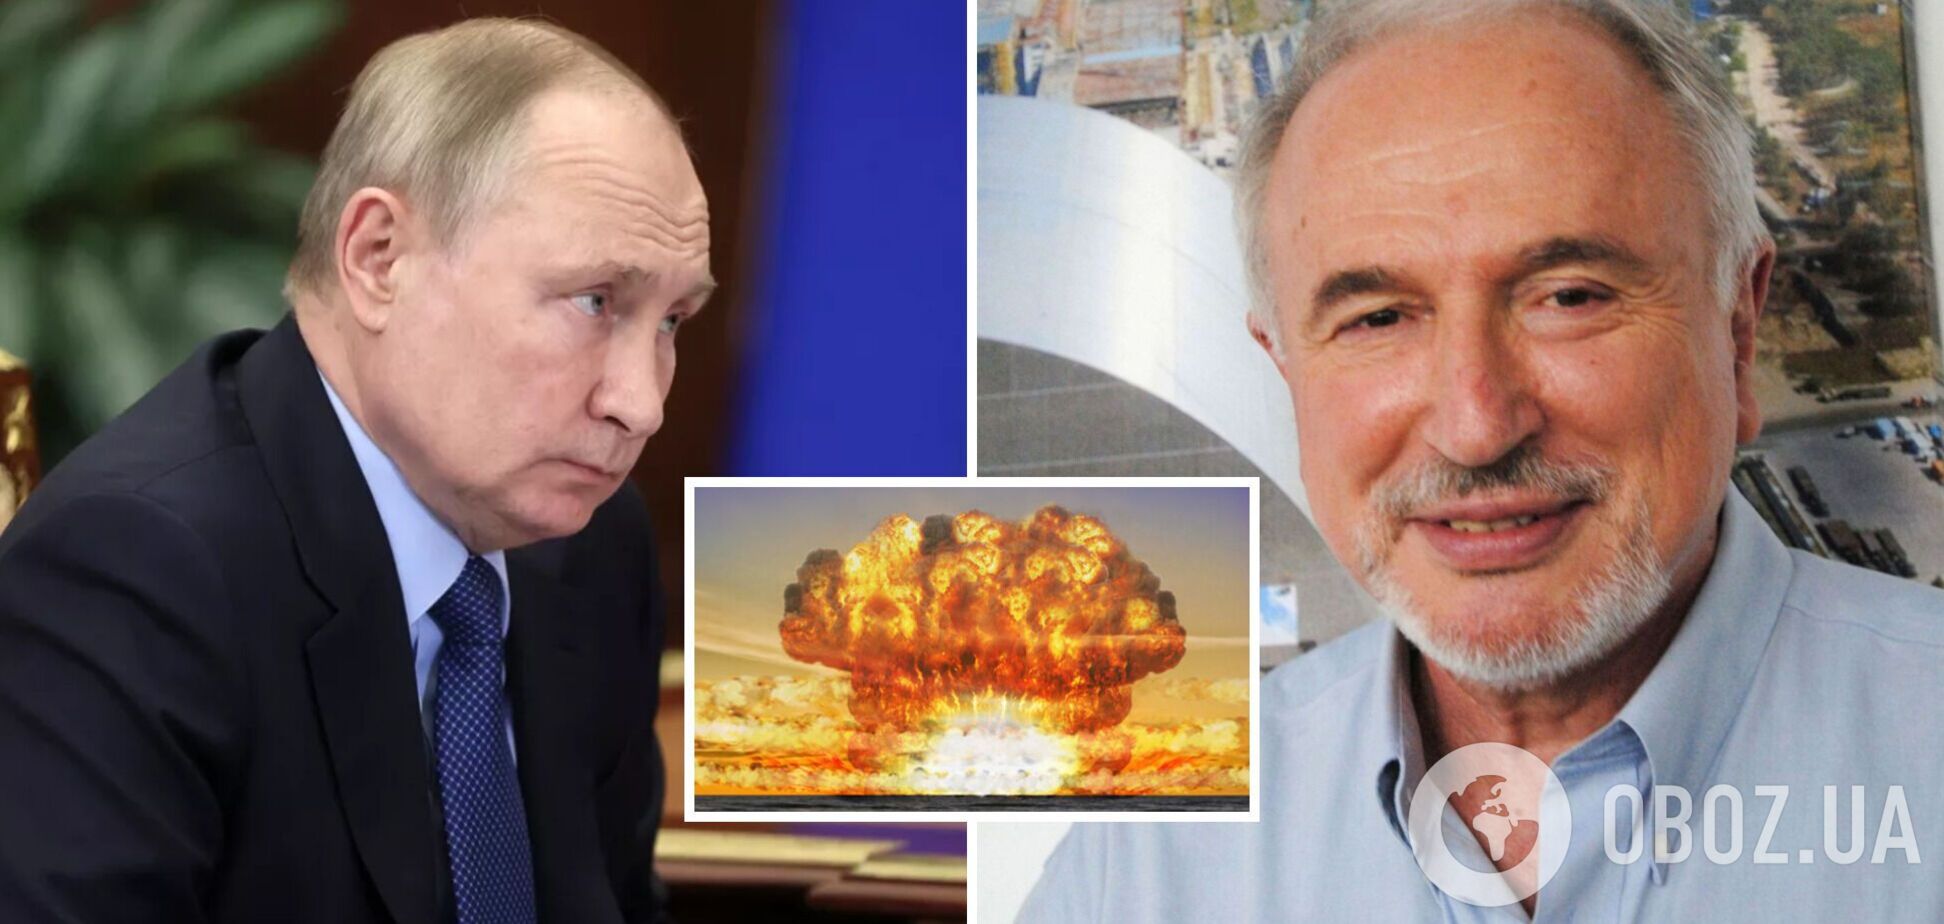 Все, что делает Россия, – ядерный шантаж: Марк Железняк объяснил, для чего Путину вброс про 'грязную бомбу'. Видео